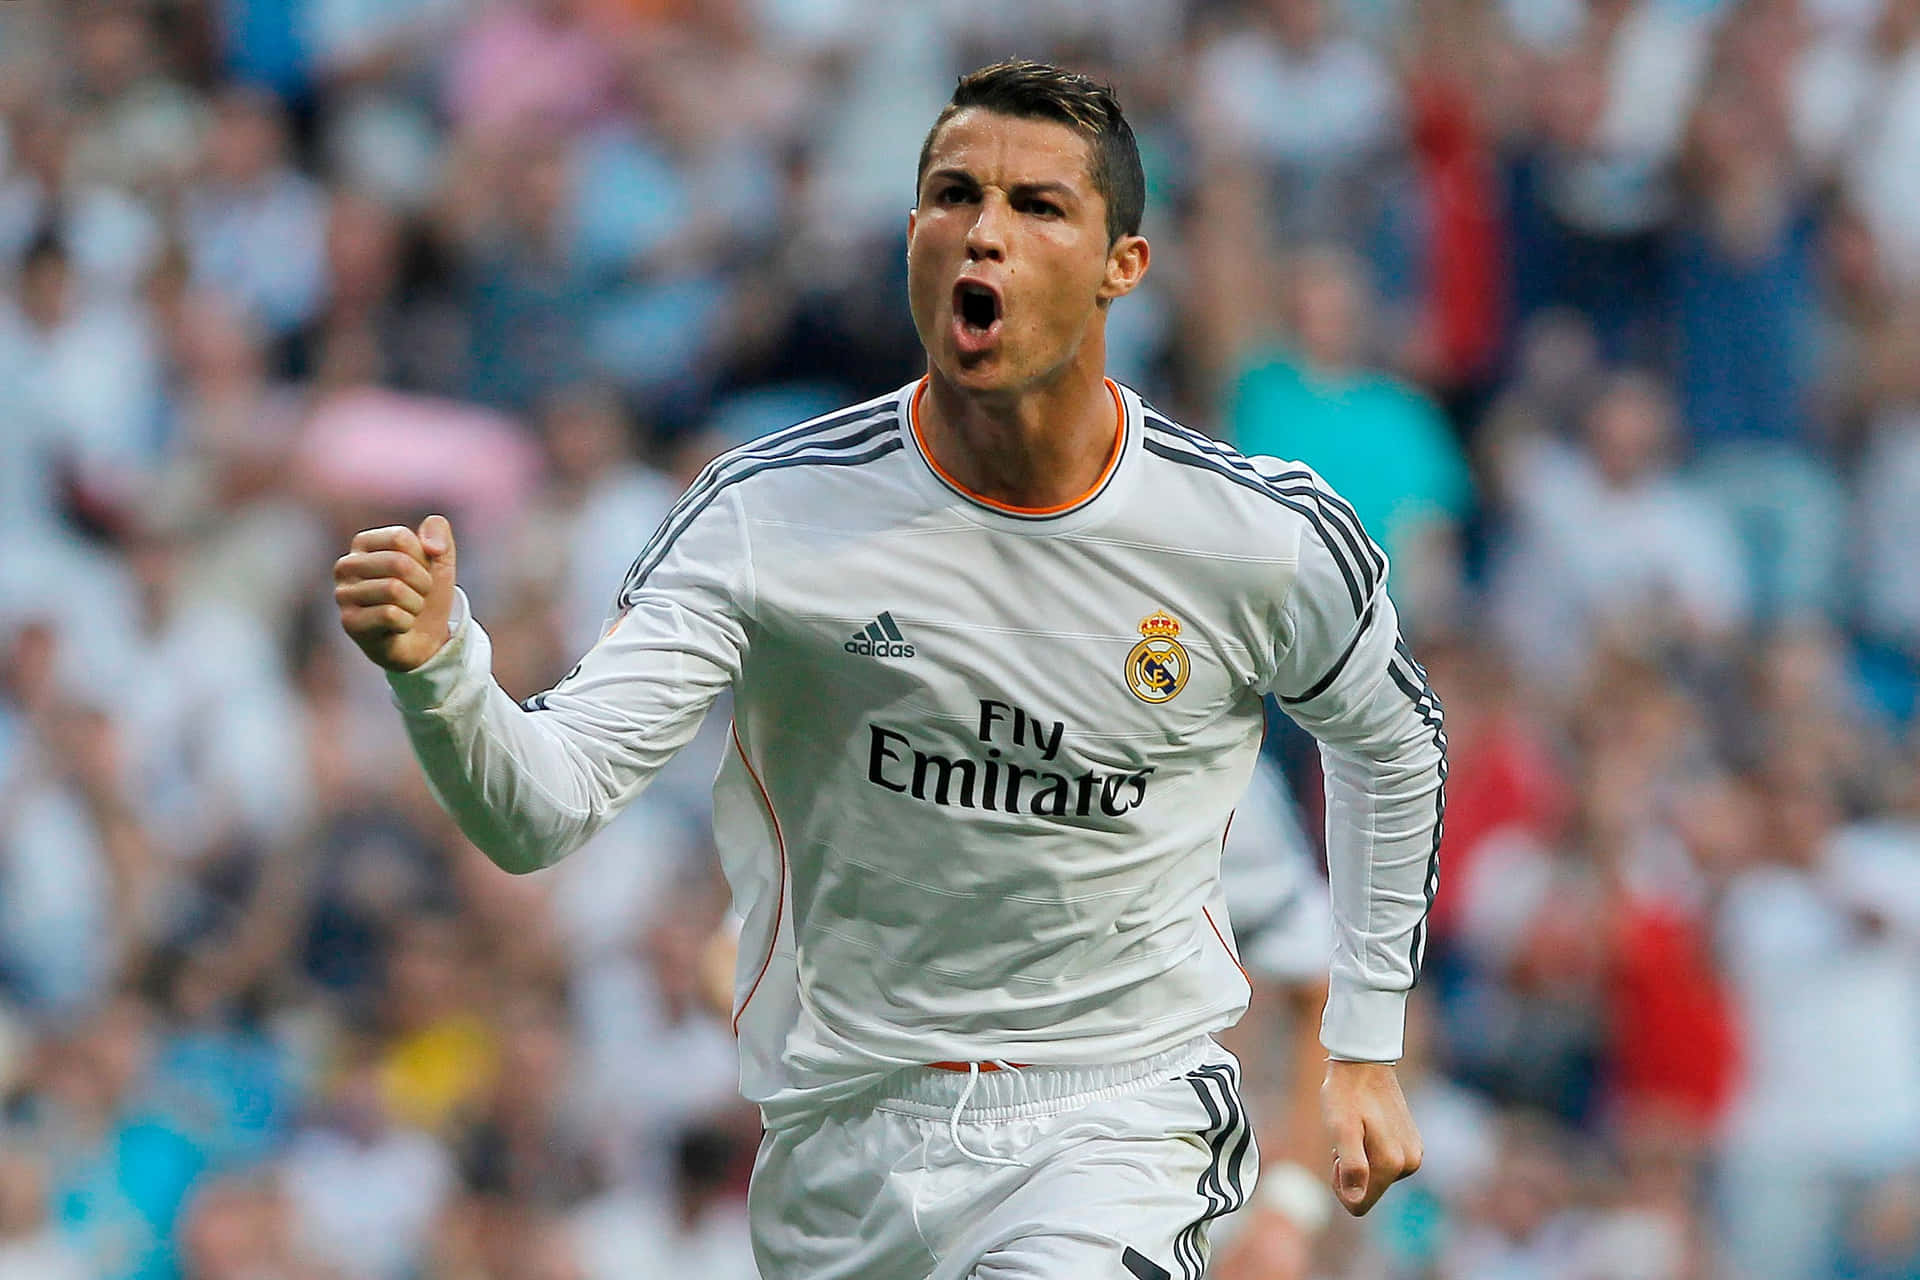 Caption: Cristiano Ronaldo Celebrating a Goal